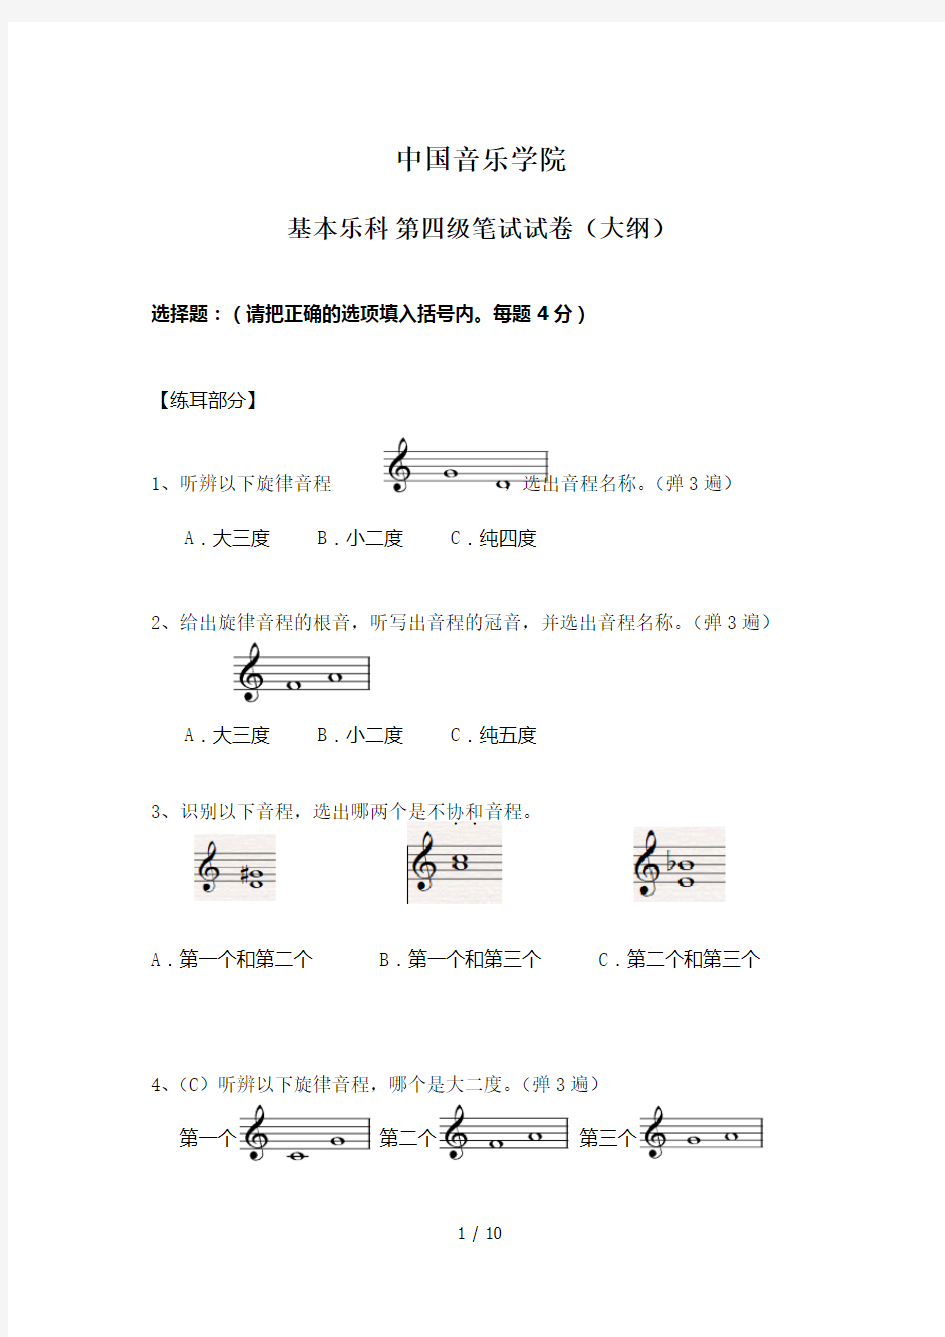 中国音乐学院乐理考级大纲(四级)